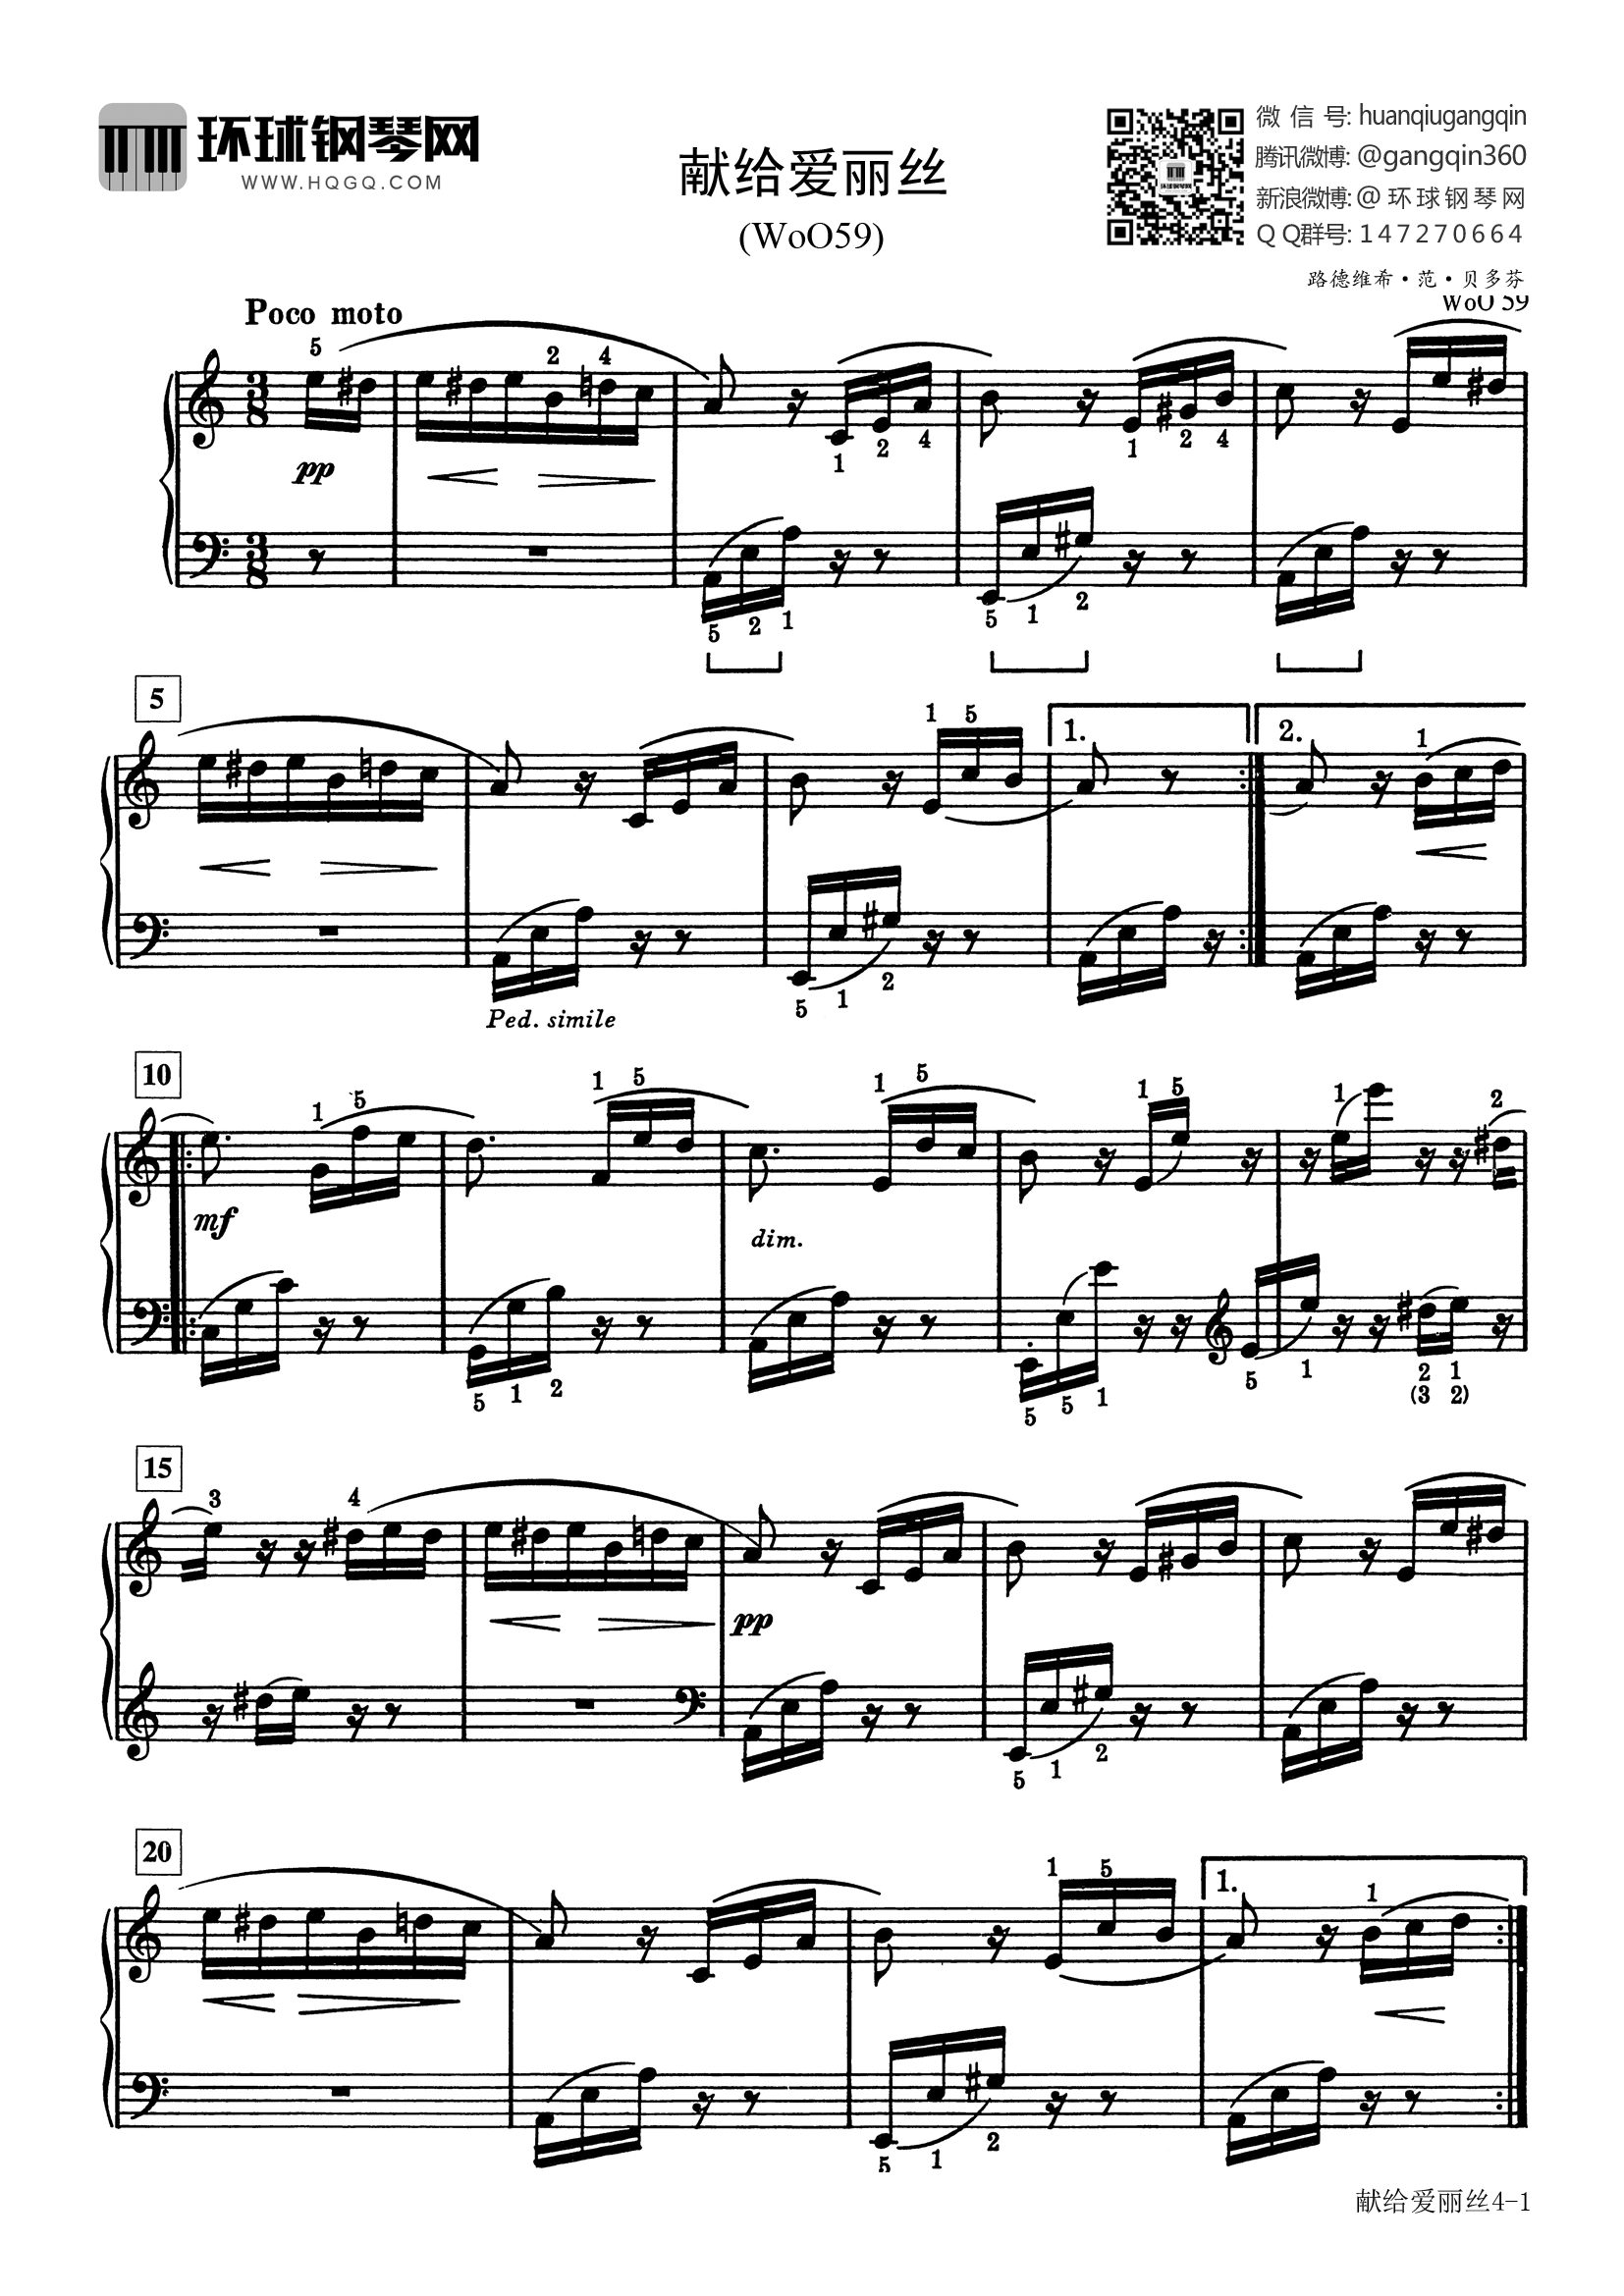 钢琴曲献给爱丽丝下载(献给爱丽丝钢琴曲 mp3)